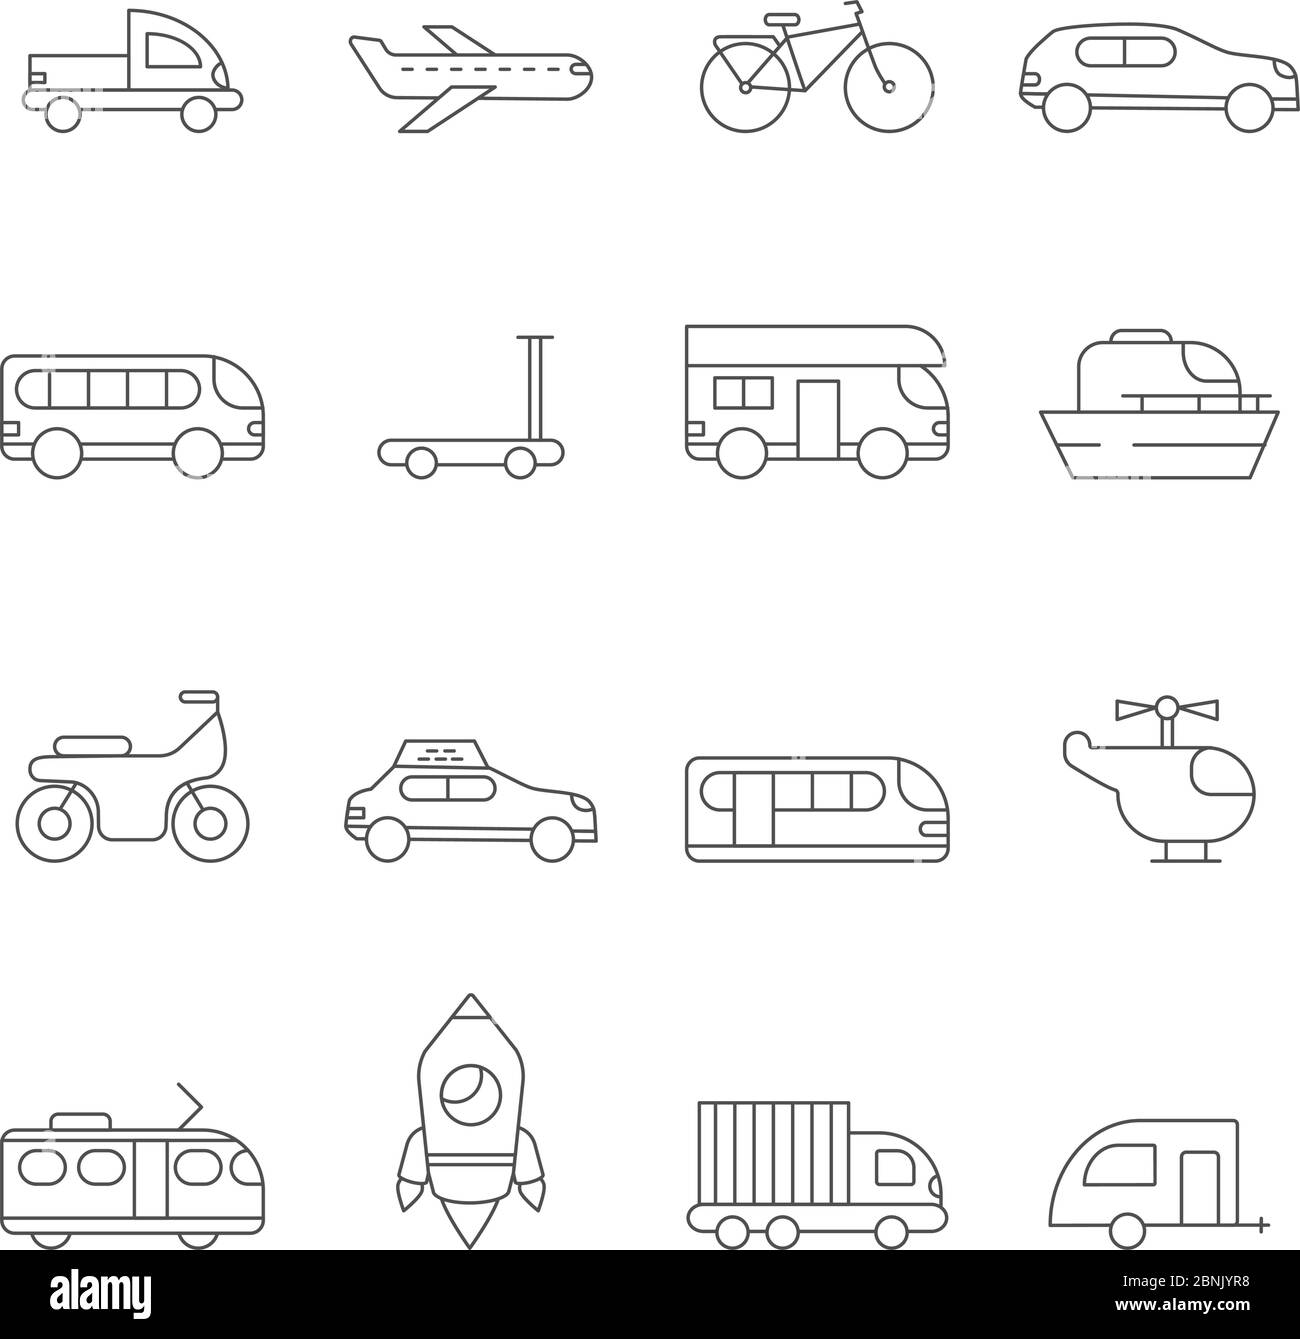 Symbol für Transport. Lineare Illustrationen verschiedener städtischer Verkehrsmittel Stock Vektor